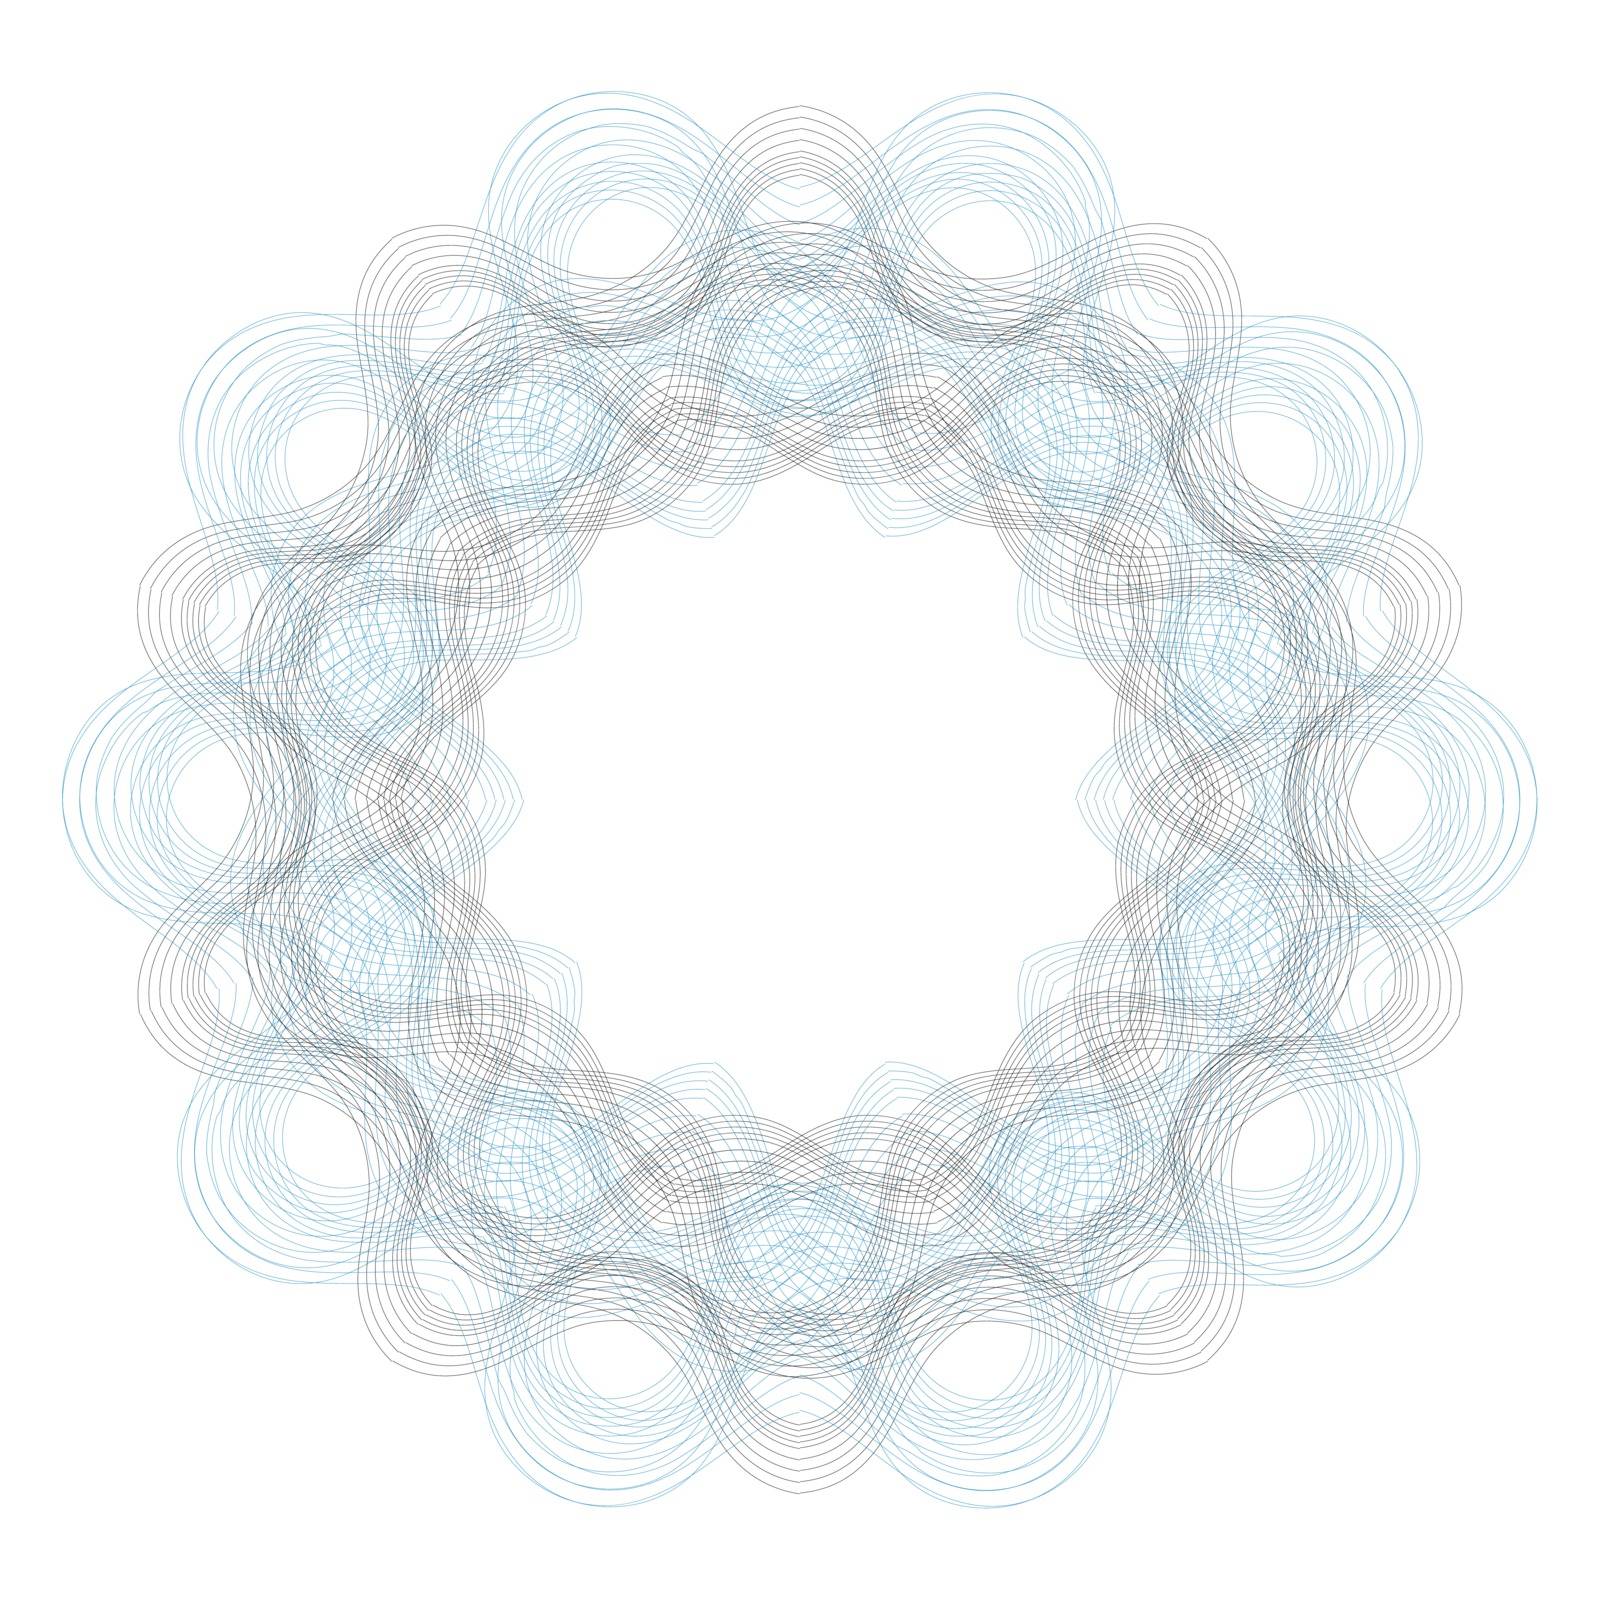 Decorative Circle Wave Frame Isolated on White Background